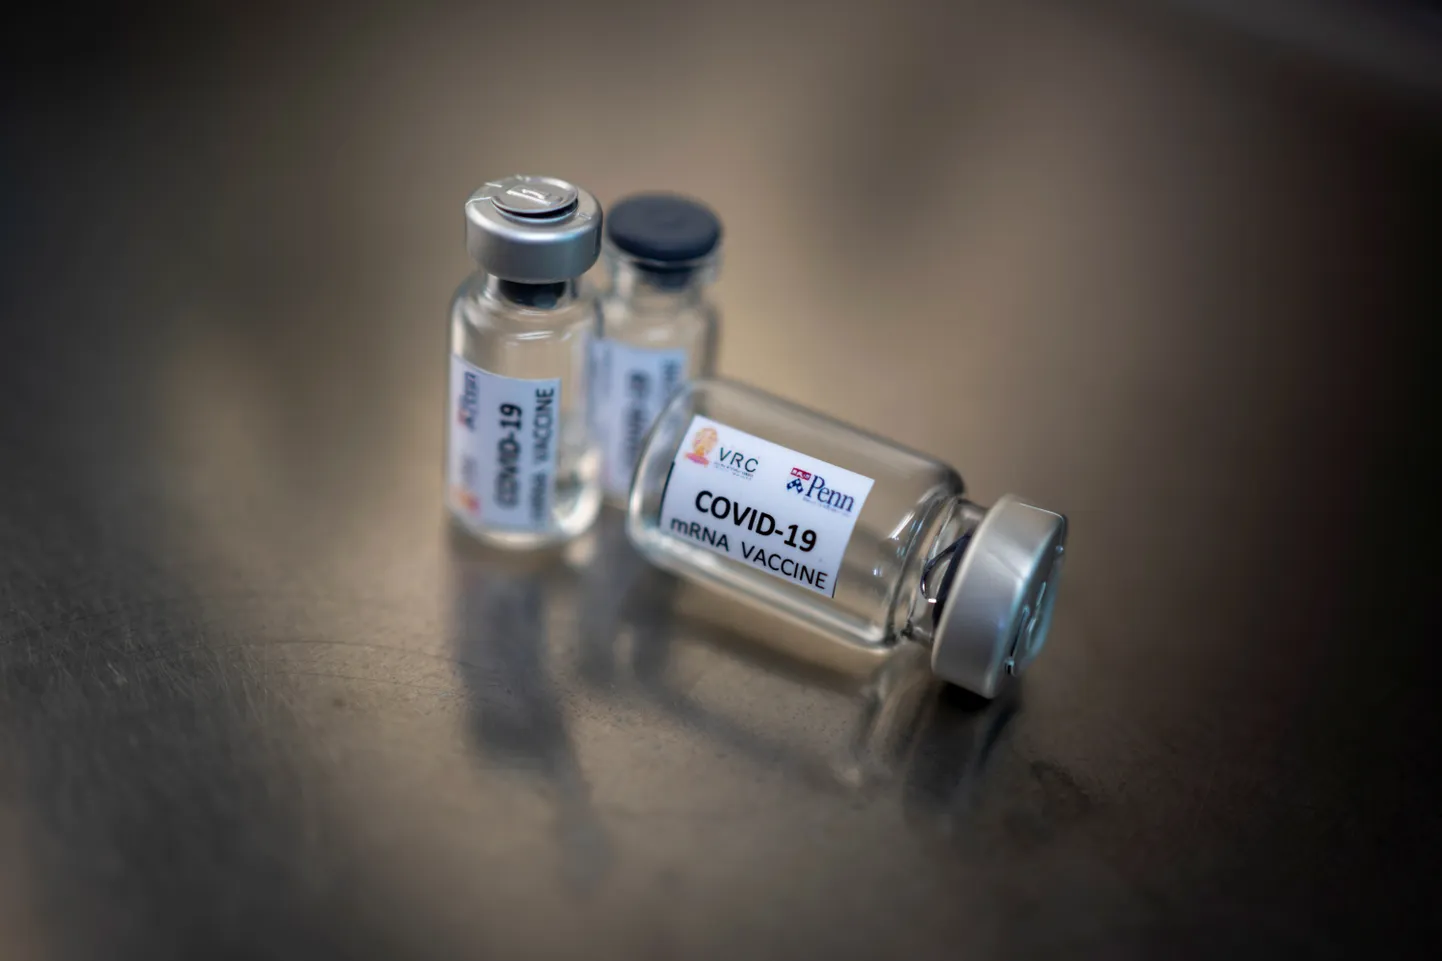 Covid-19 vaktsiini test.